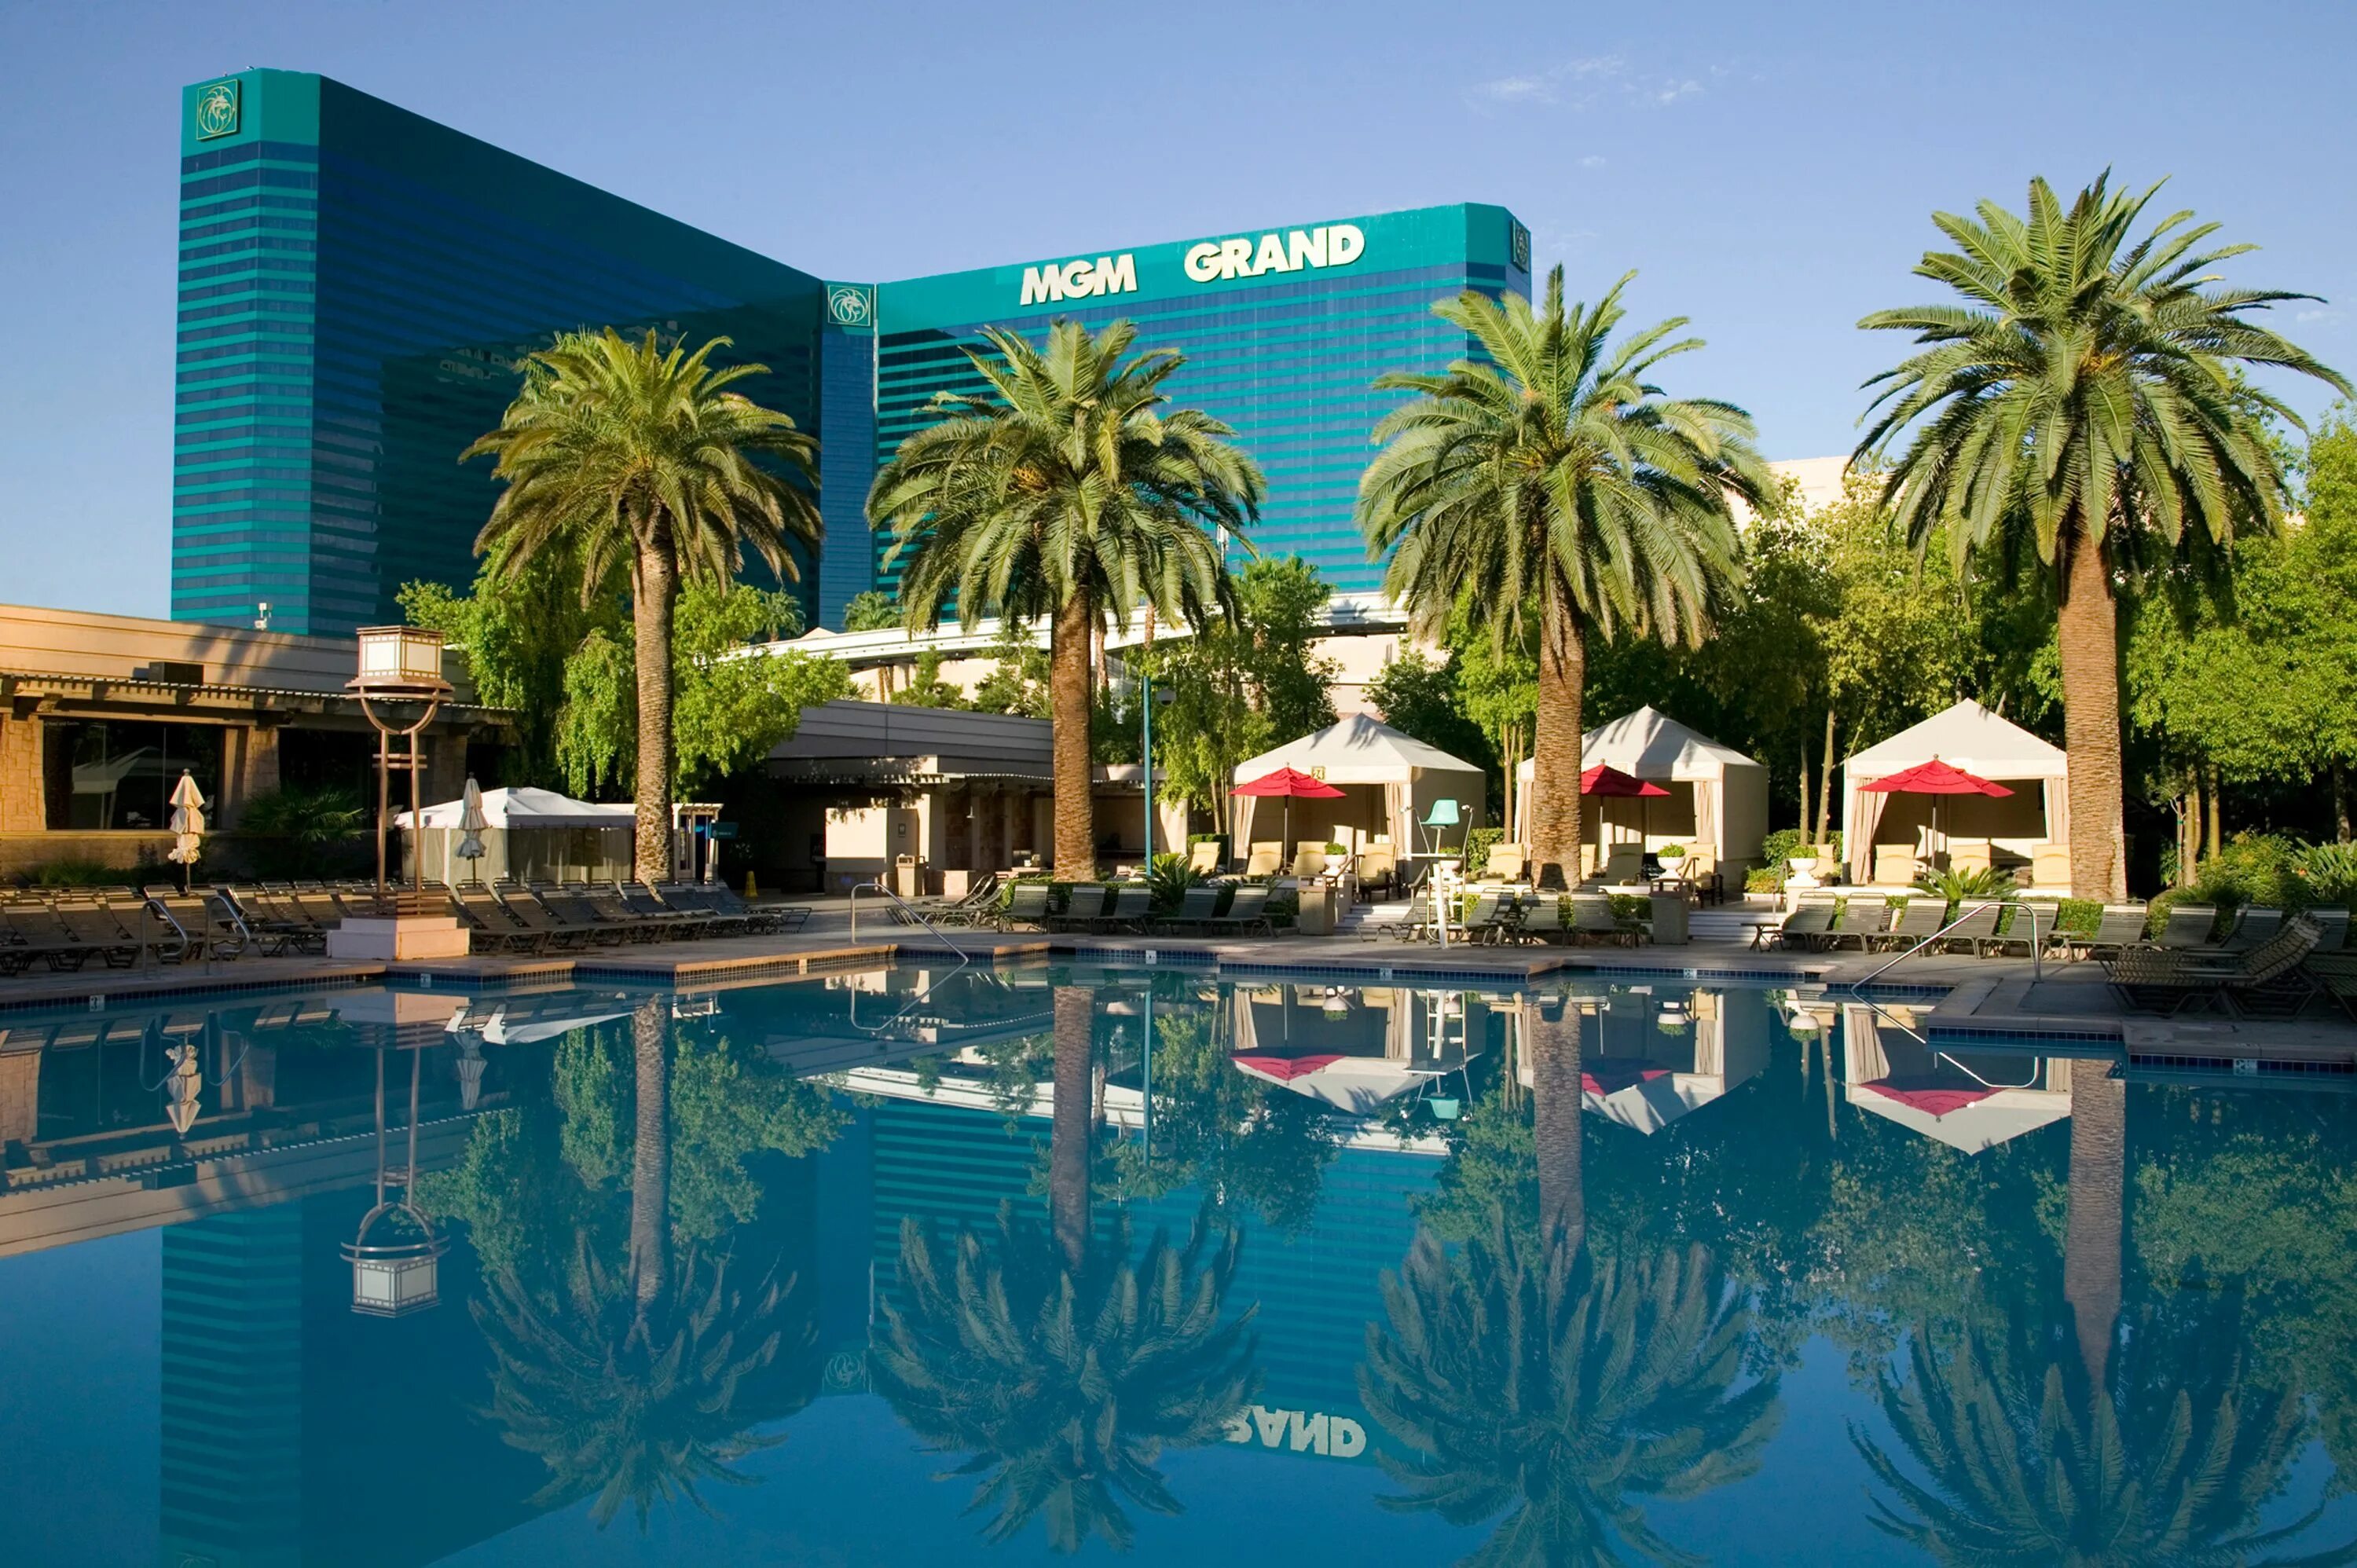 Vegas grant vegasgrandcazino. Отель MGM Grand в Лас-Вегасе. Лас Вегас отель MGM. MGM Grand Hotel & Casino. Казино MGM Grand в Лас-Вегасе.